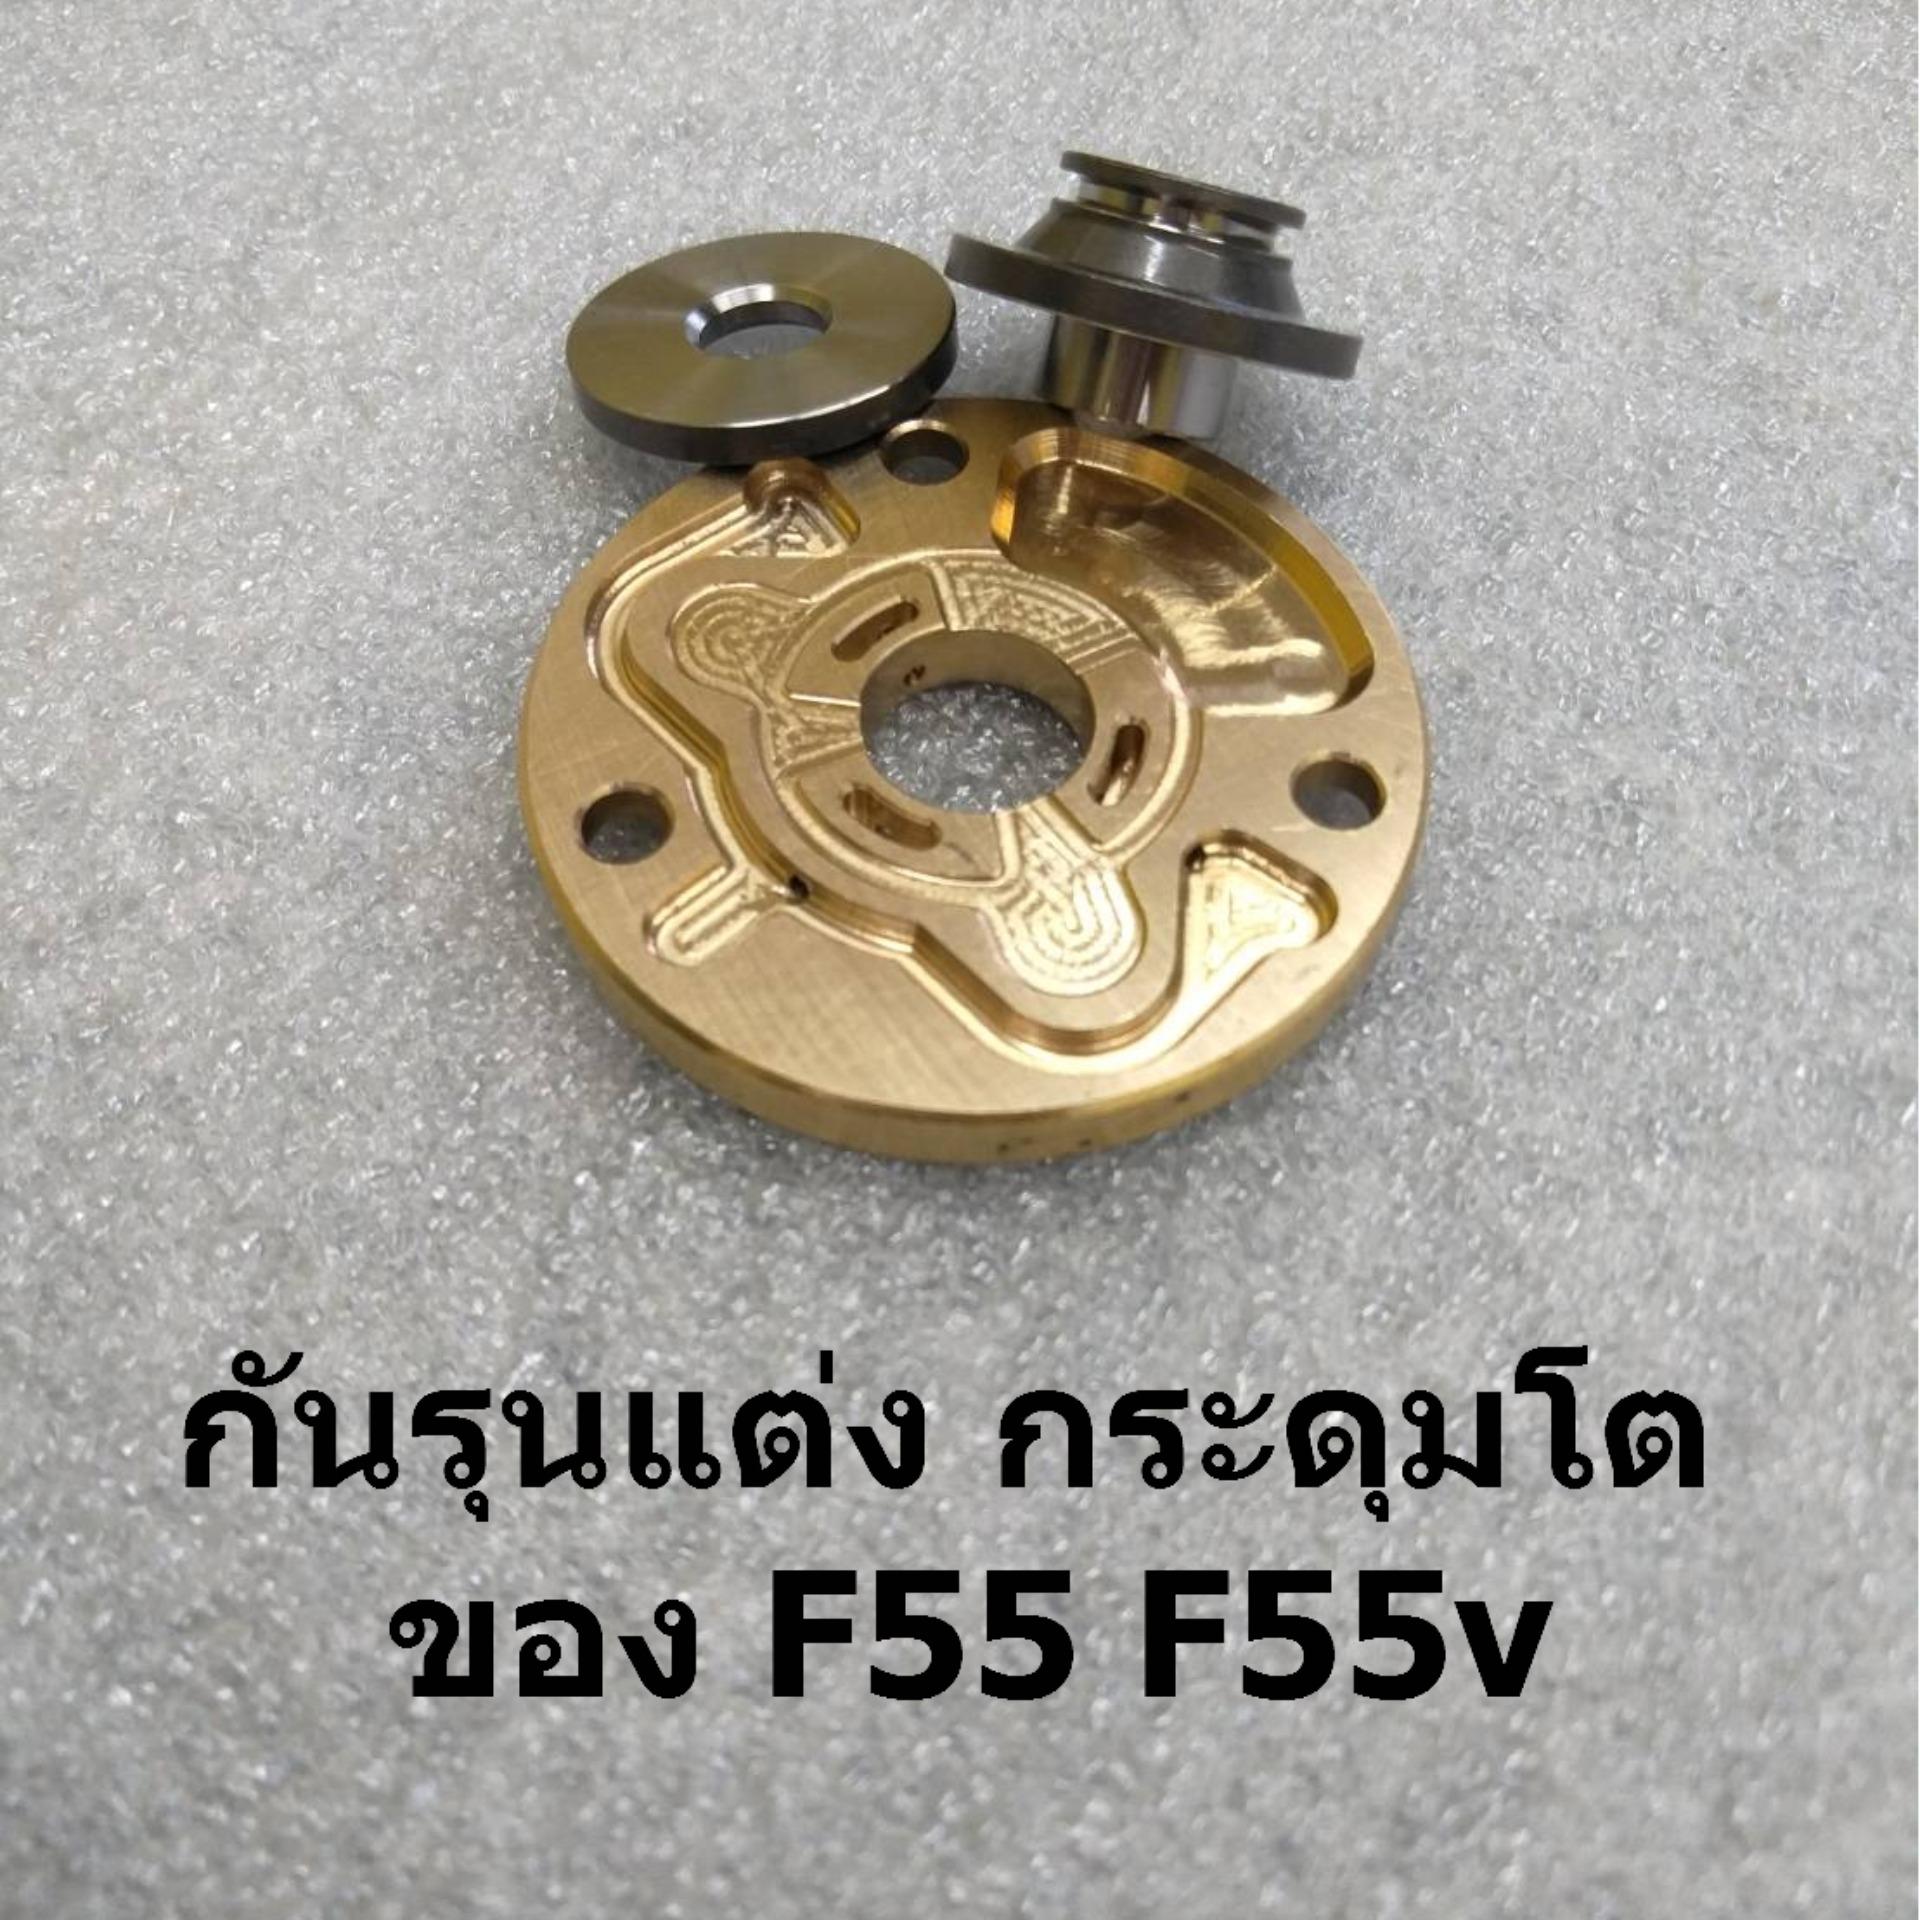 กันรุนแต่ง กระดุมโต  ของ F55 F55v (จำนวน 3 ชิ้น ตามรูป)